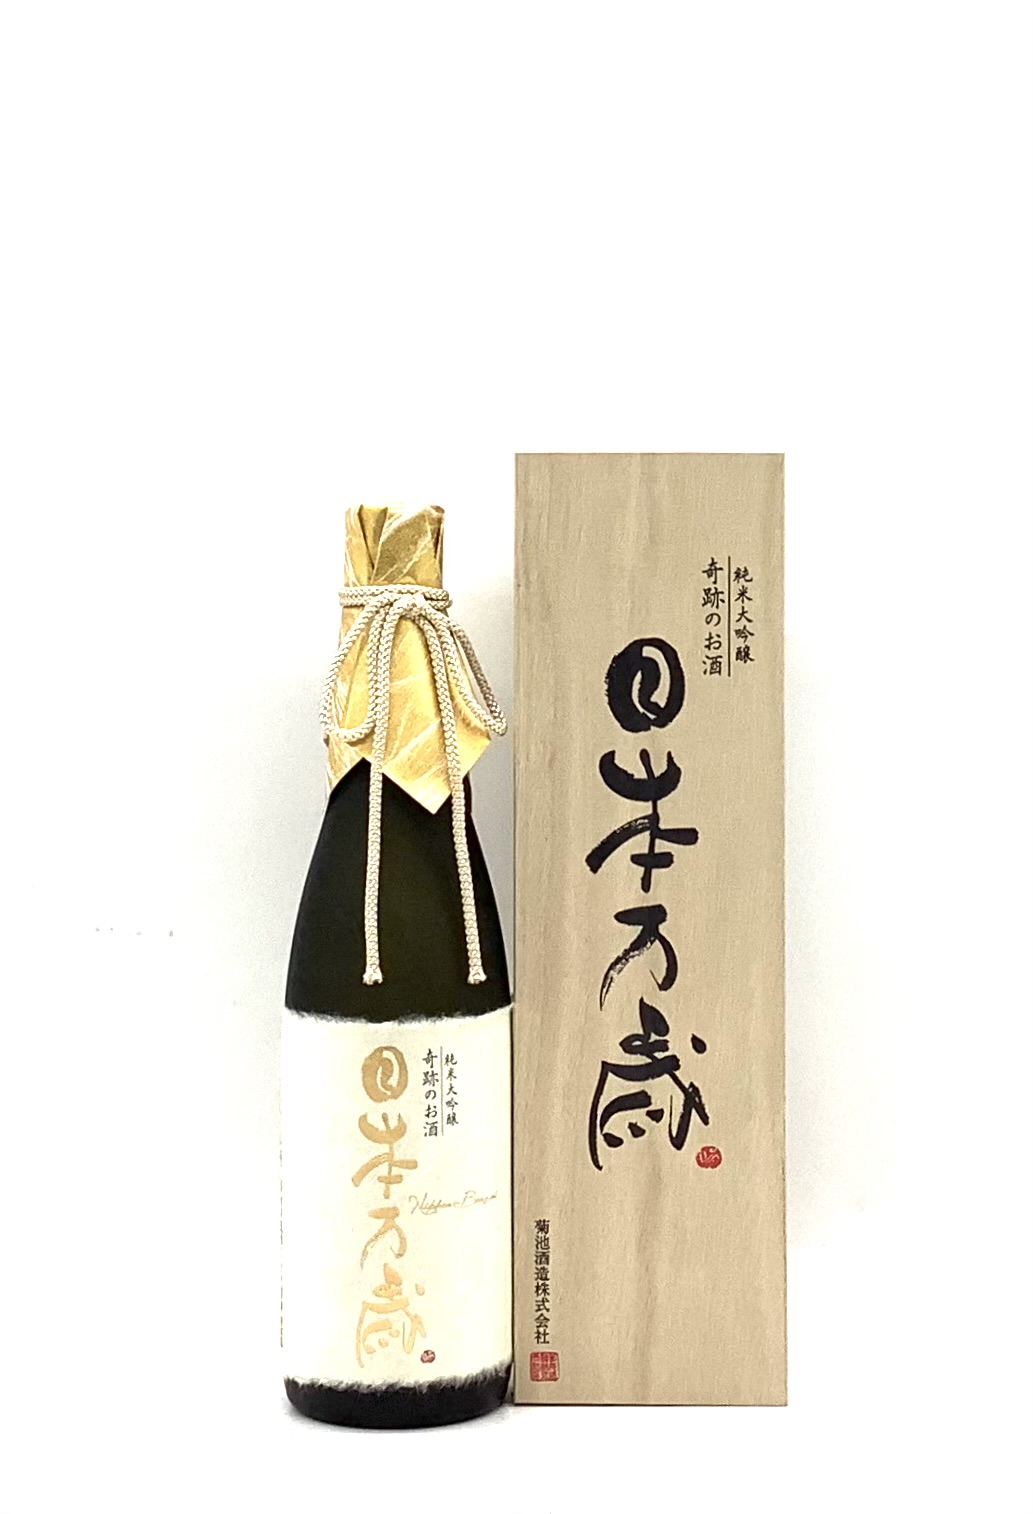 木村式奇跡のお酒 純米大吟醸 雄町 日本万歳 720ml 酒のいろは 日本酒・焼酎・ワイン・ウイスキーの通販